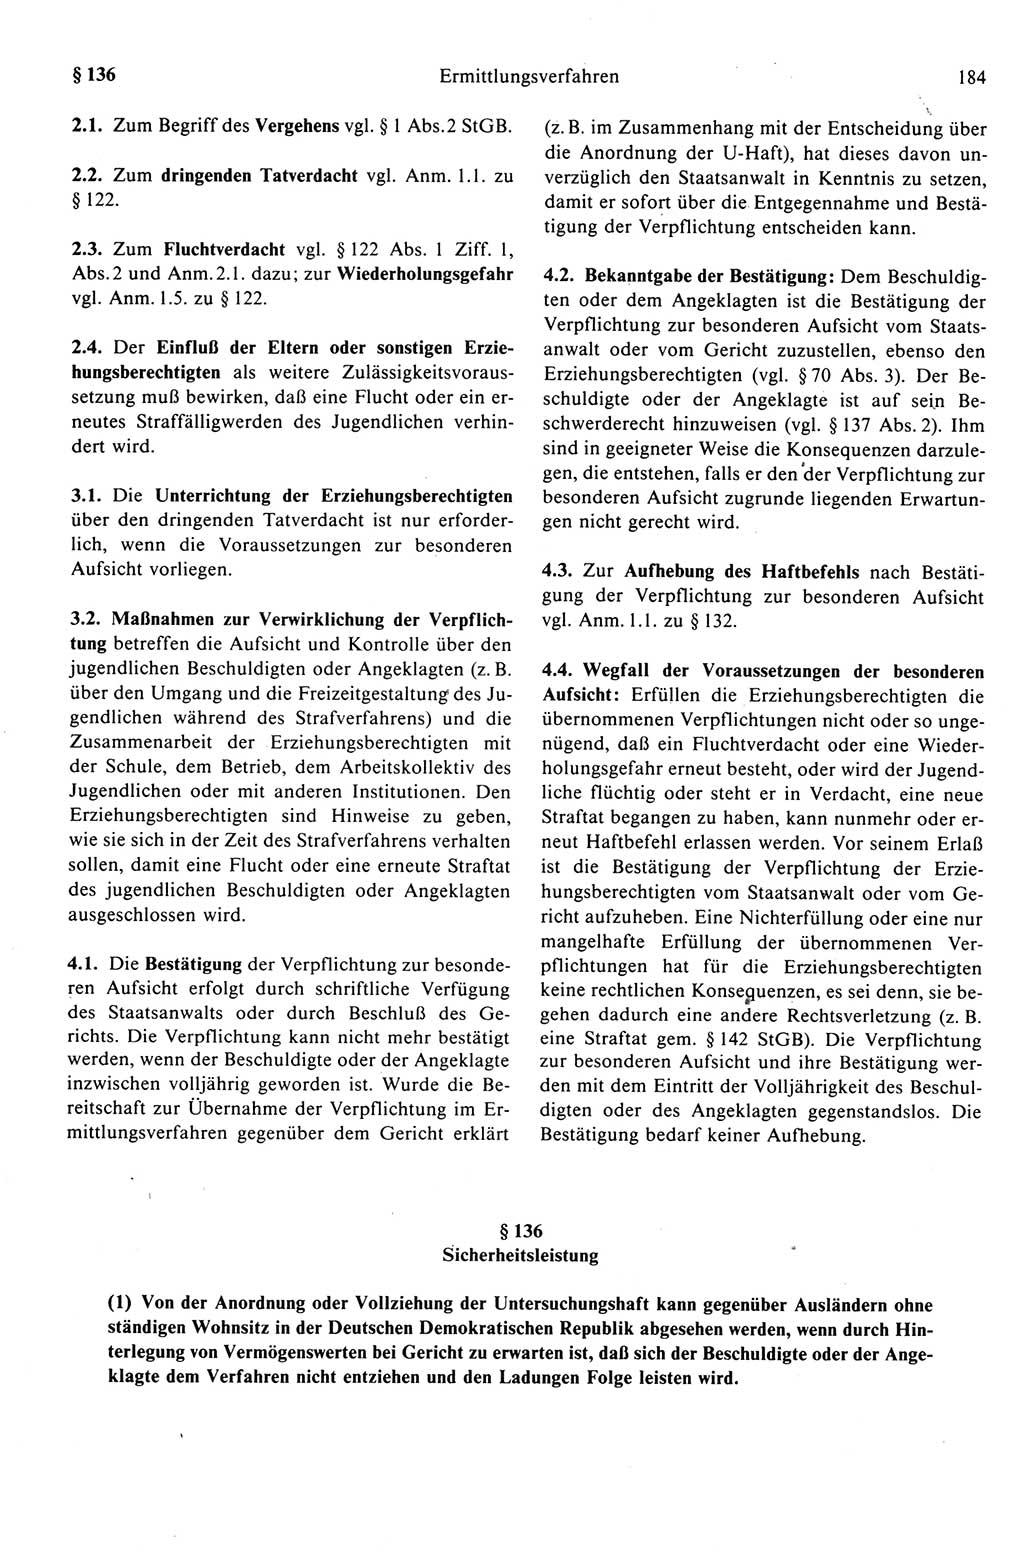 Strafprozeßrecht der DDR (Deutsche Demokratische Republik), Kommentar zur Strafprozeßordnung (StPO) 1989, Seite 184 (Strafprozeßr. DDR Komm. StPO 1989, S. 184)